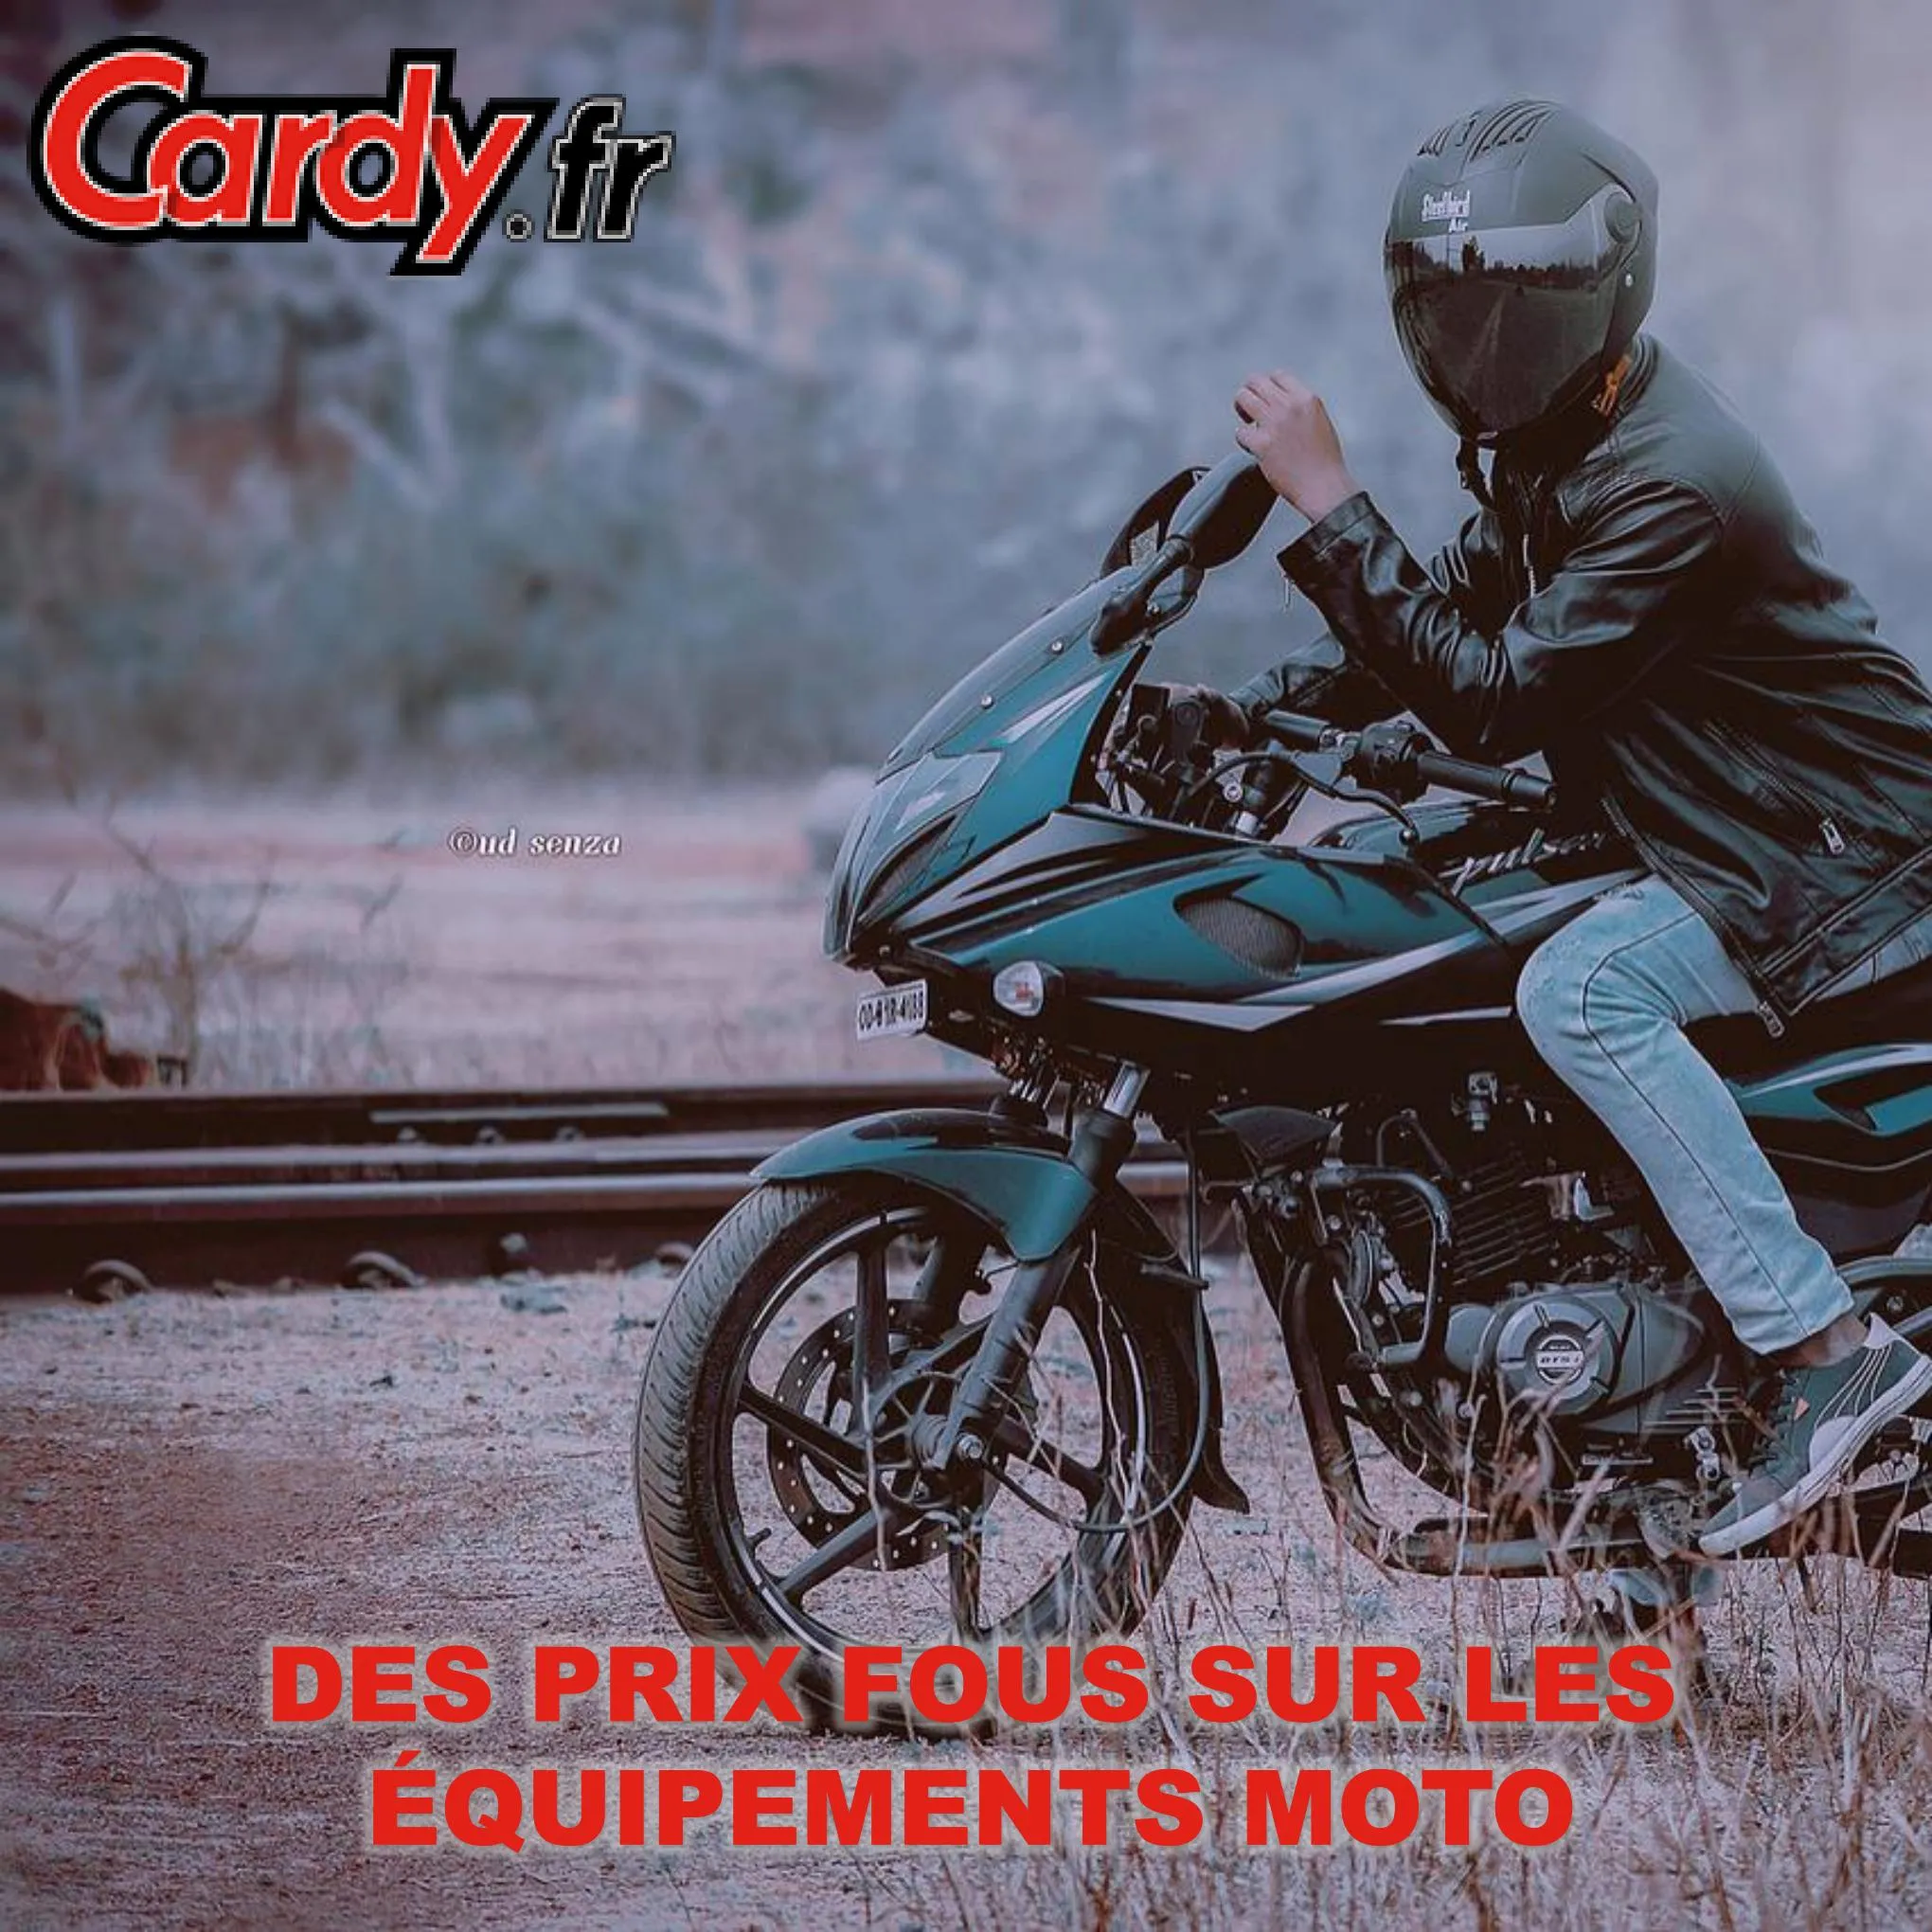 Catalogue Des prix fous sur les équipements moto, page 00001